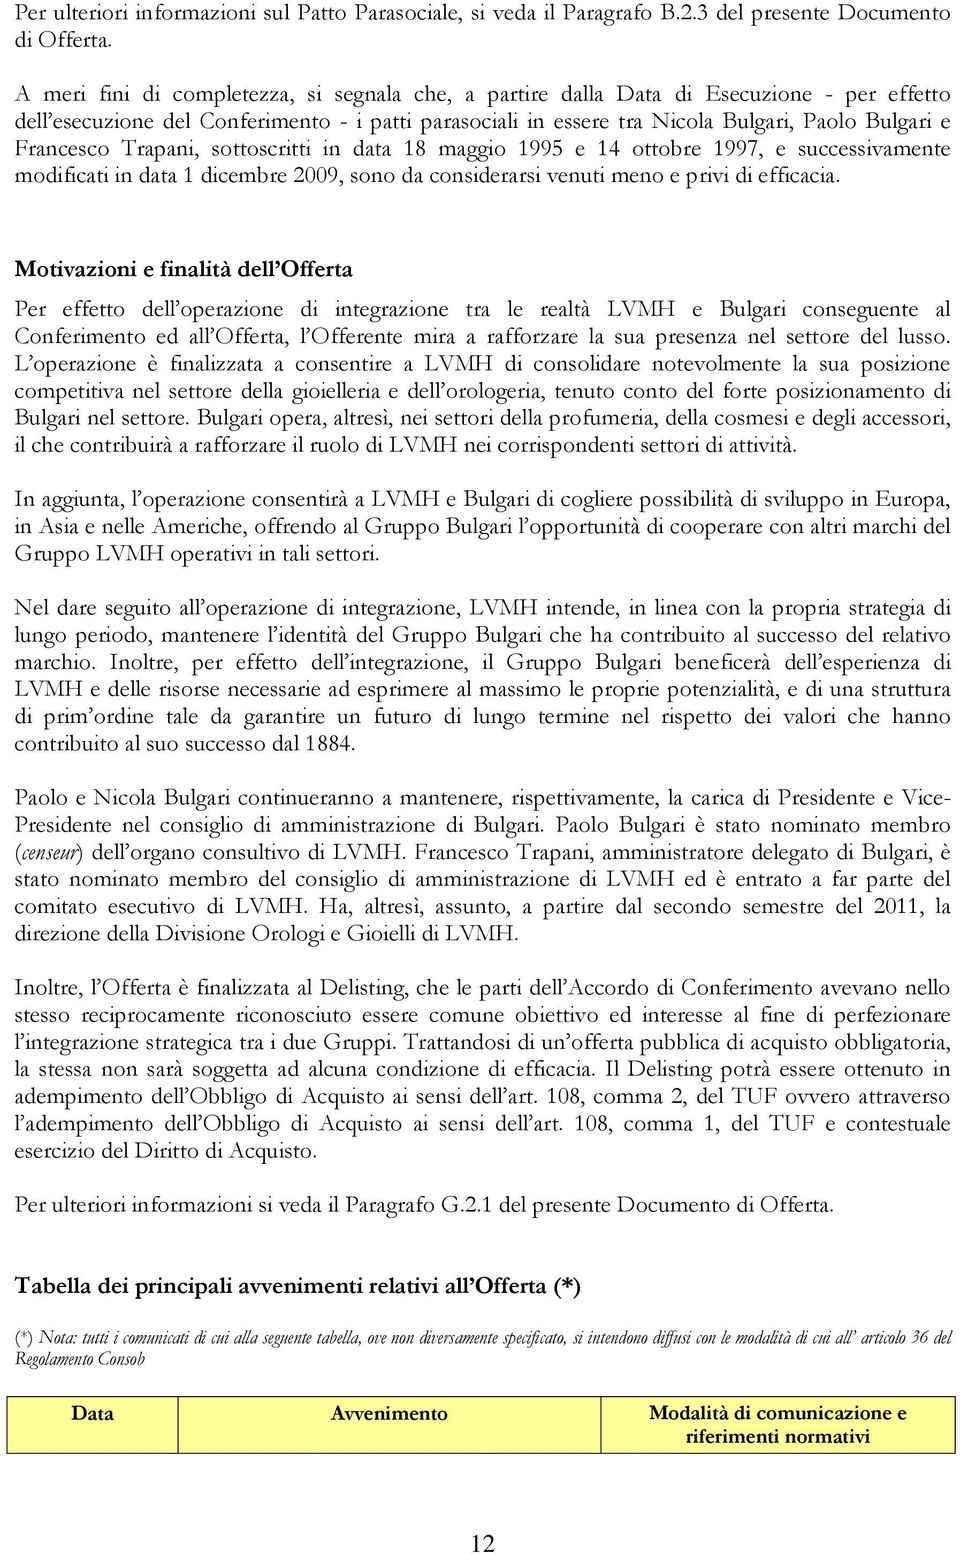 Francesco Trapani, sottoscritti in data 18 maggio 1995 e 14 ottobre 1997, e successivamente modificati in data 1 dicembre 2009, sono da considerarsi venuti meno e privi di efficacia.